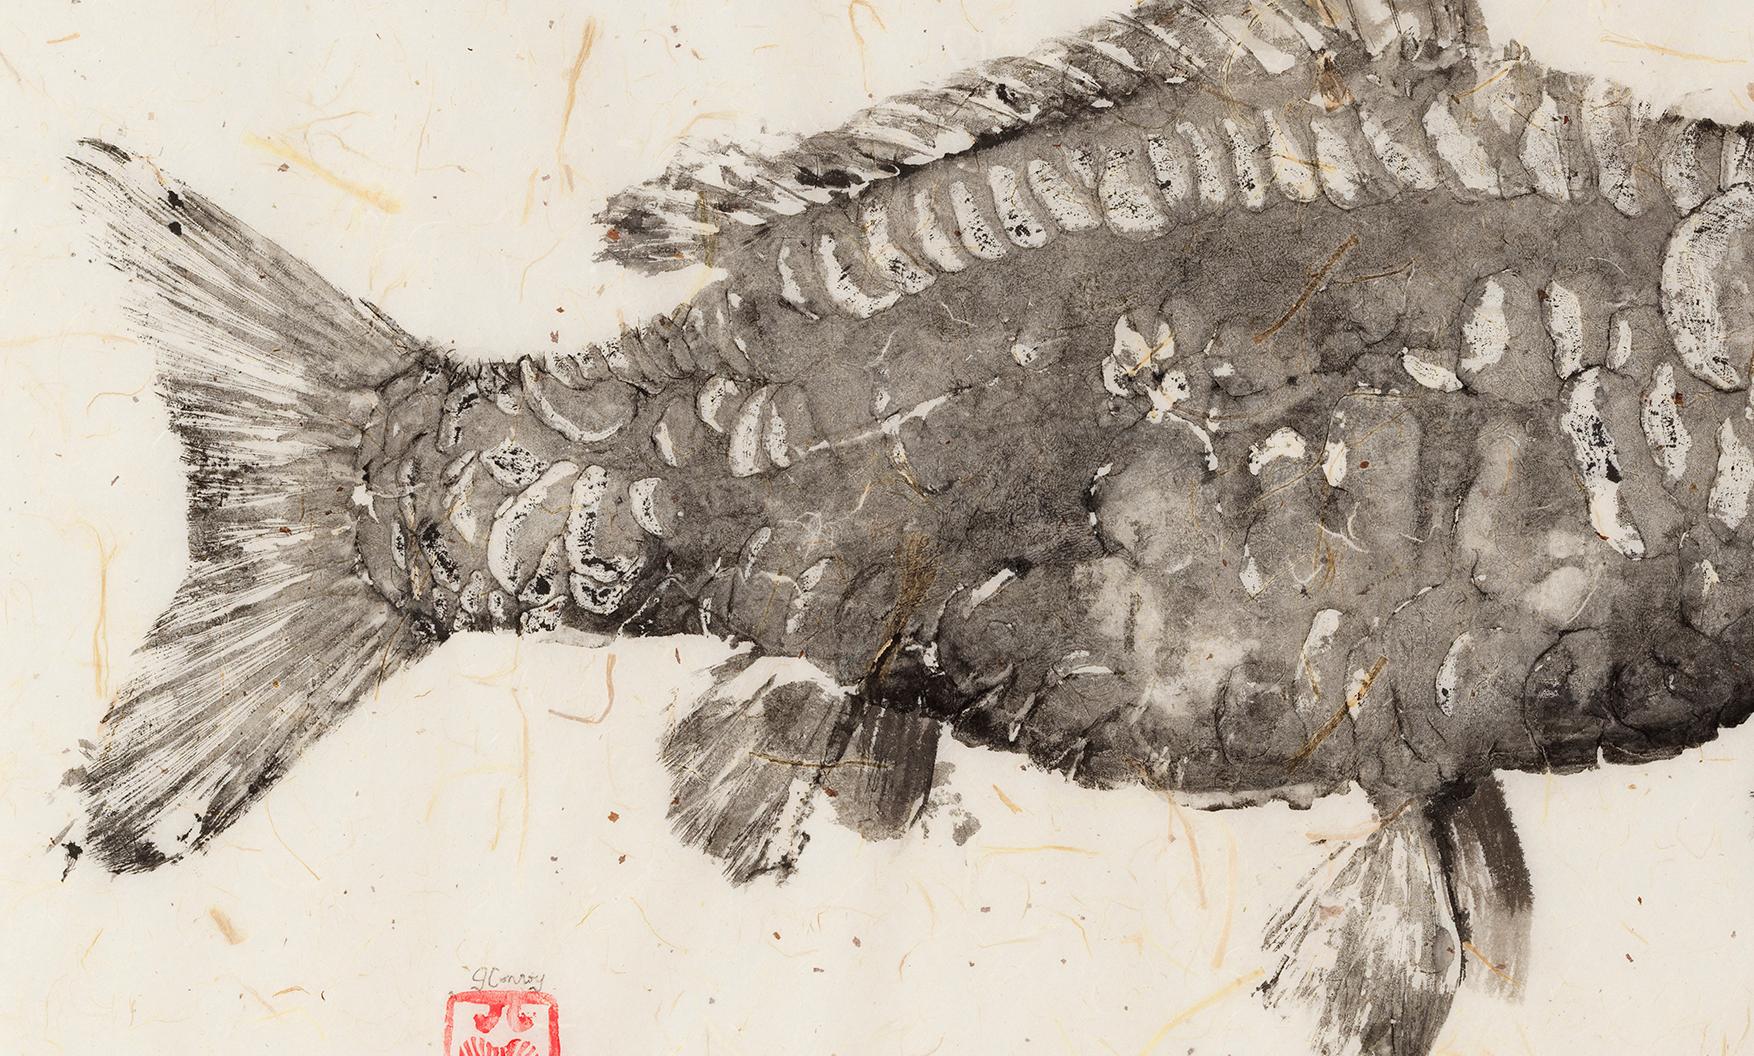 Dies ist ein Gyotaku-Malerei von zwei Fischen auf einem Hintergrund aus Maulbeerpapier.  Diese Fischimpression mit minimaler Farbe ähnelt einem Fossil.  Das Maulbeerpapier hat einen sanften Farbton und eine leicht gewellte Textur, die das Gesamtbild